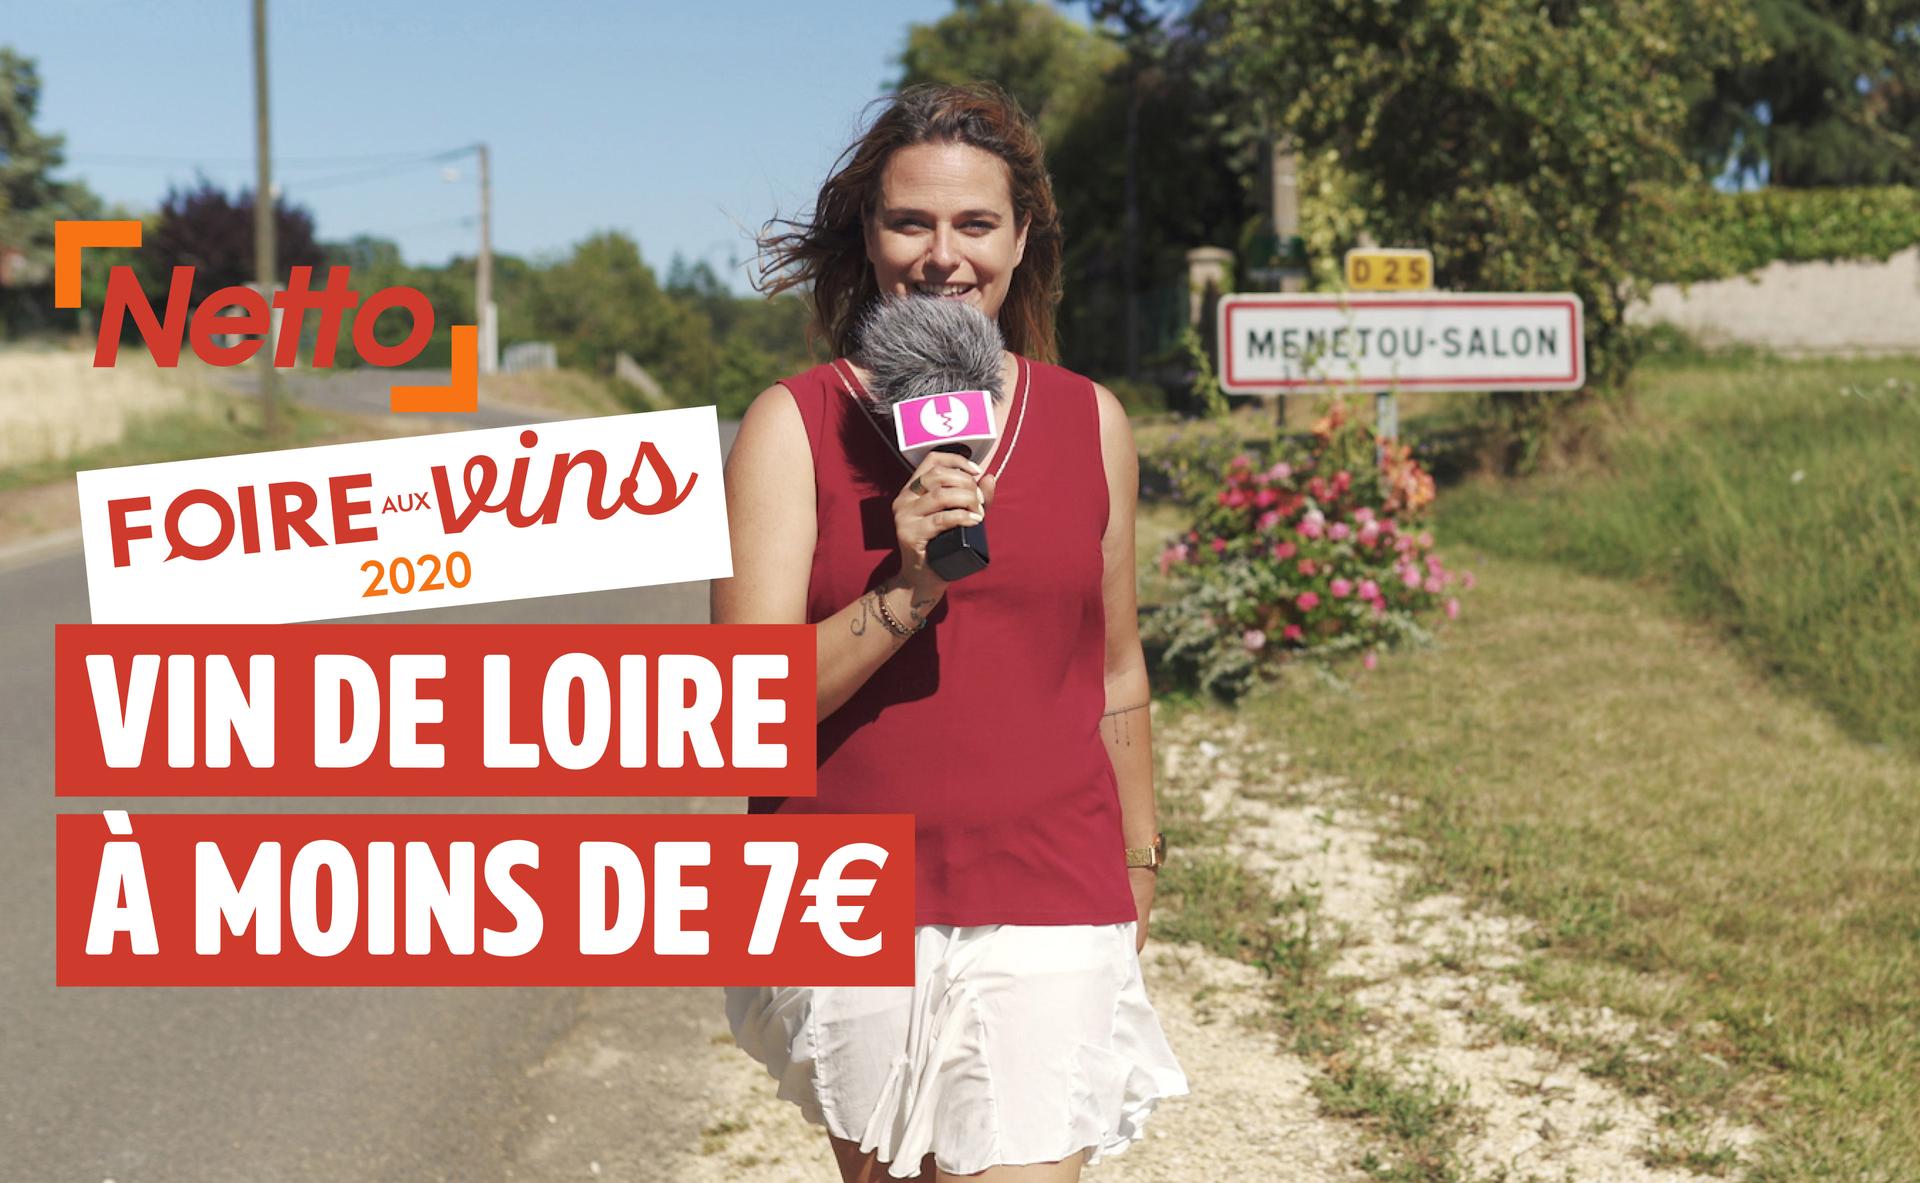 Foire aux vins 2020 : AOP Menetou-Salon